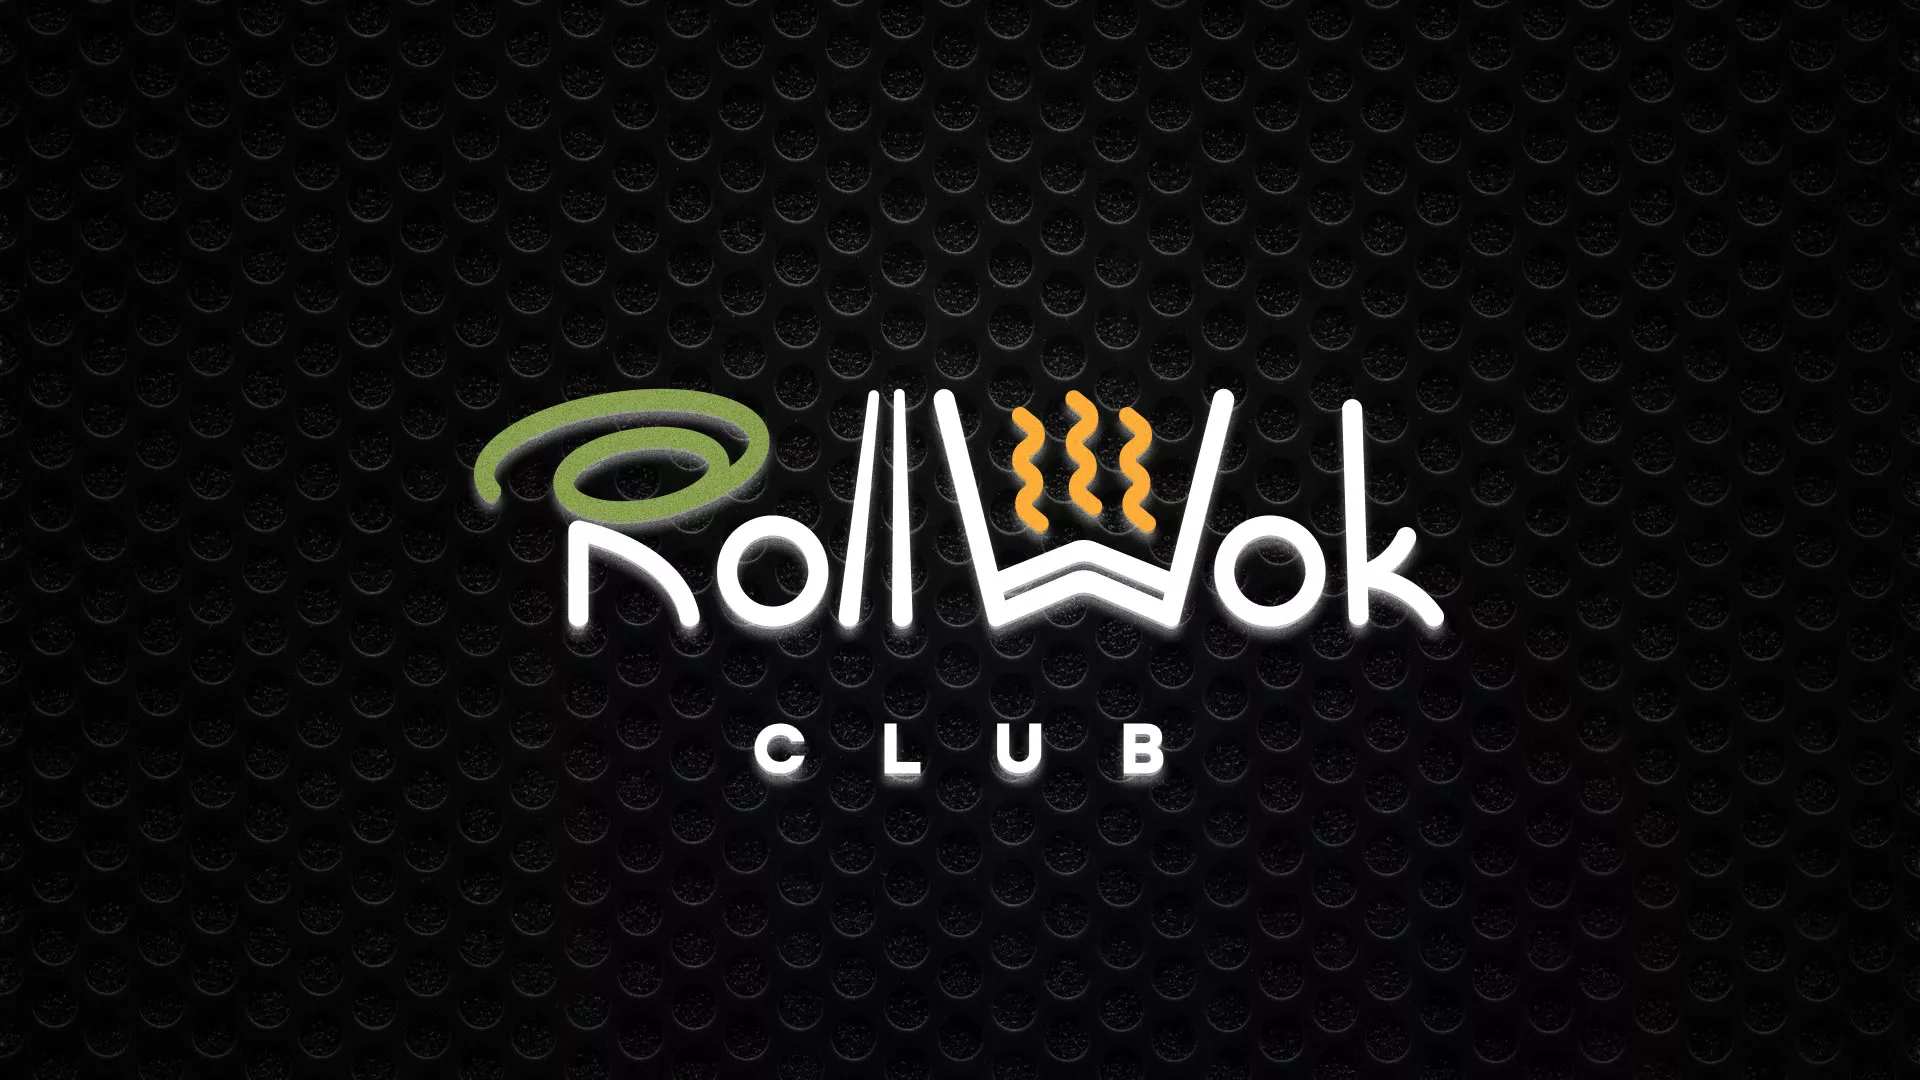 Брендирование торговых точек суши-бара «Roll Wok Club» в Долгопрудном